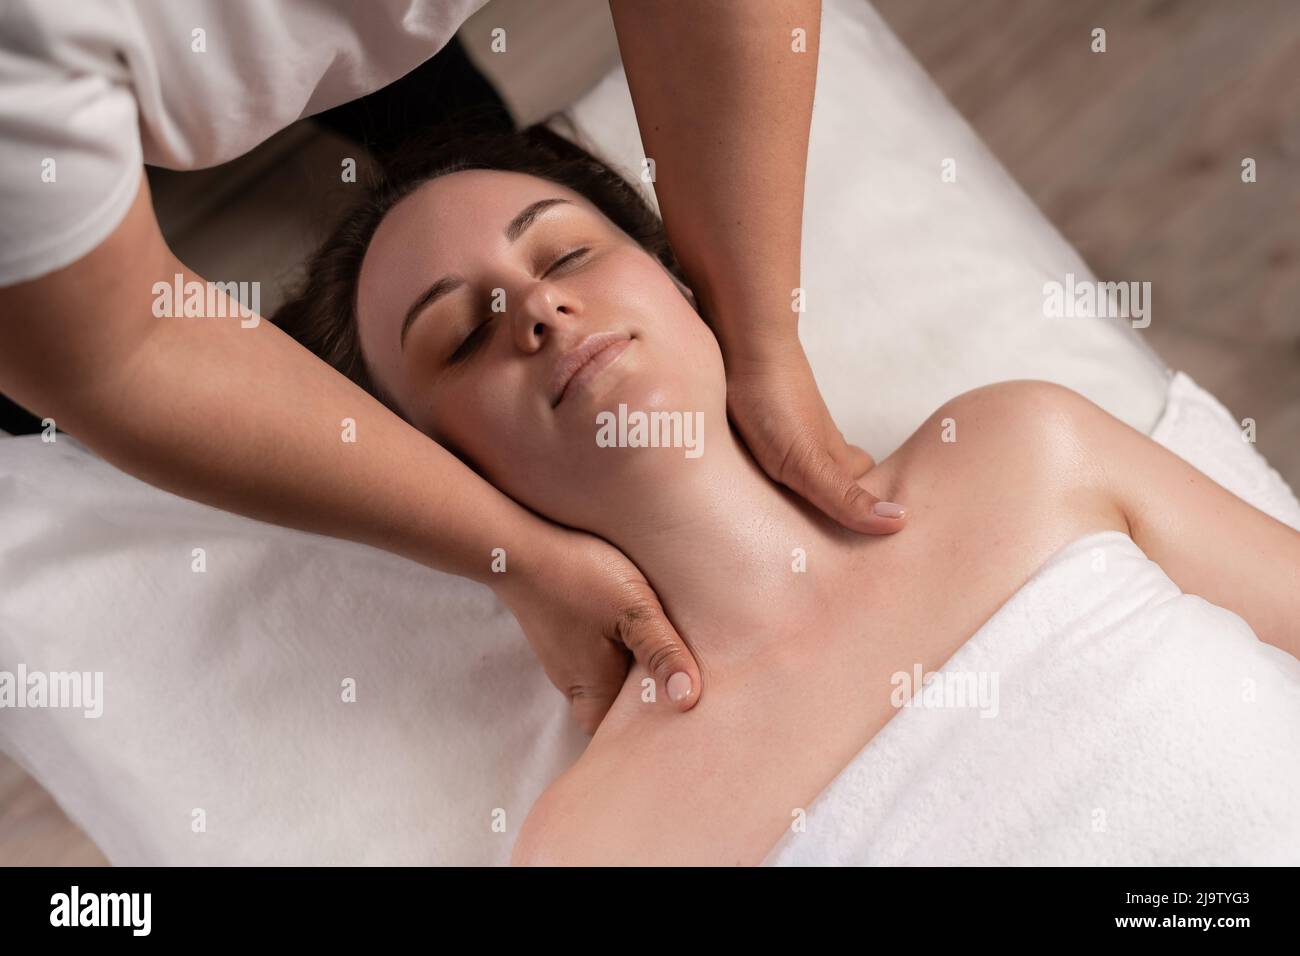 Masseur massiert den Hals einer jungen Frau im Spa-Salon. Nackenmassage im Spa-Salon für ein Mädchen. Konzept der Gesundheitsmassage. Stockfoto